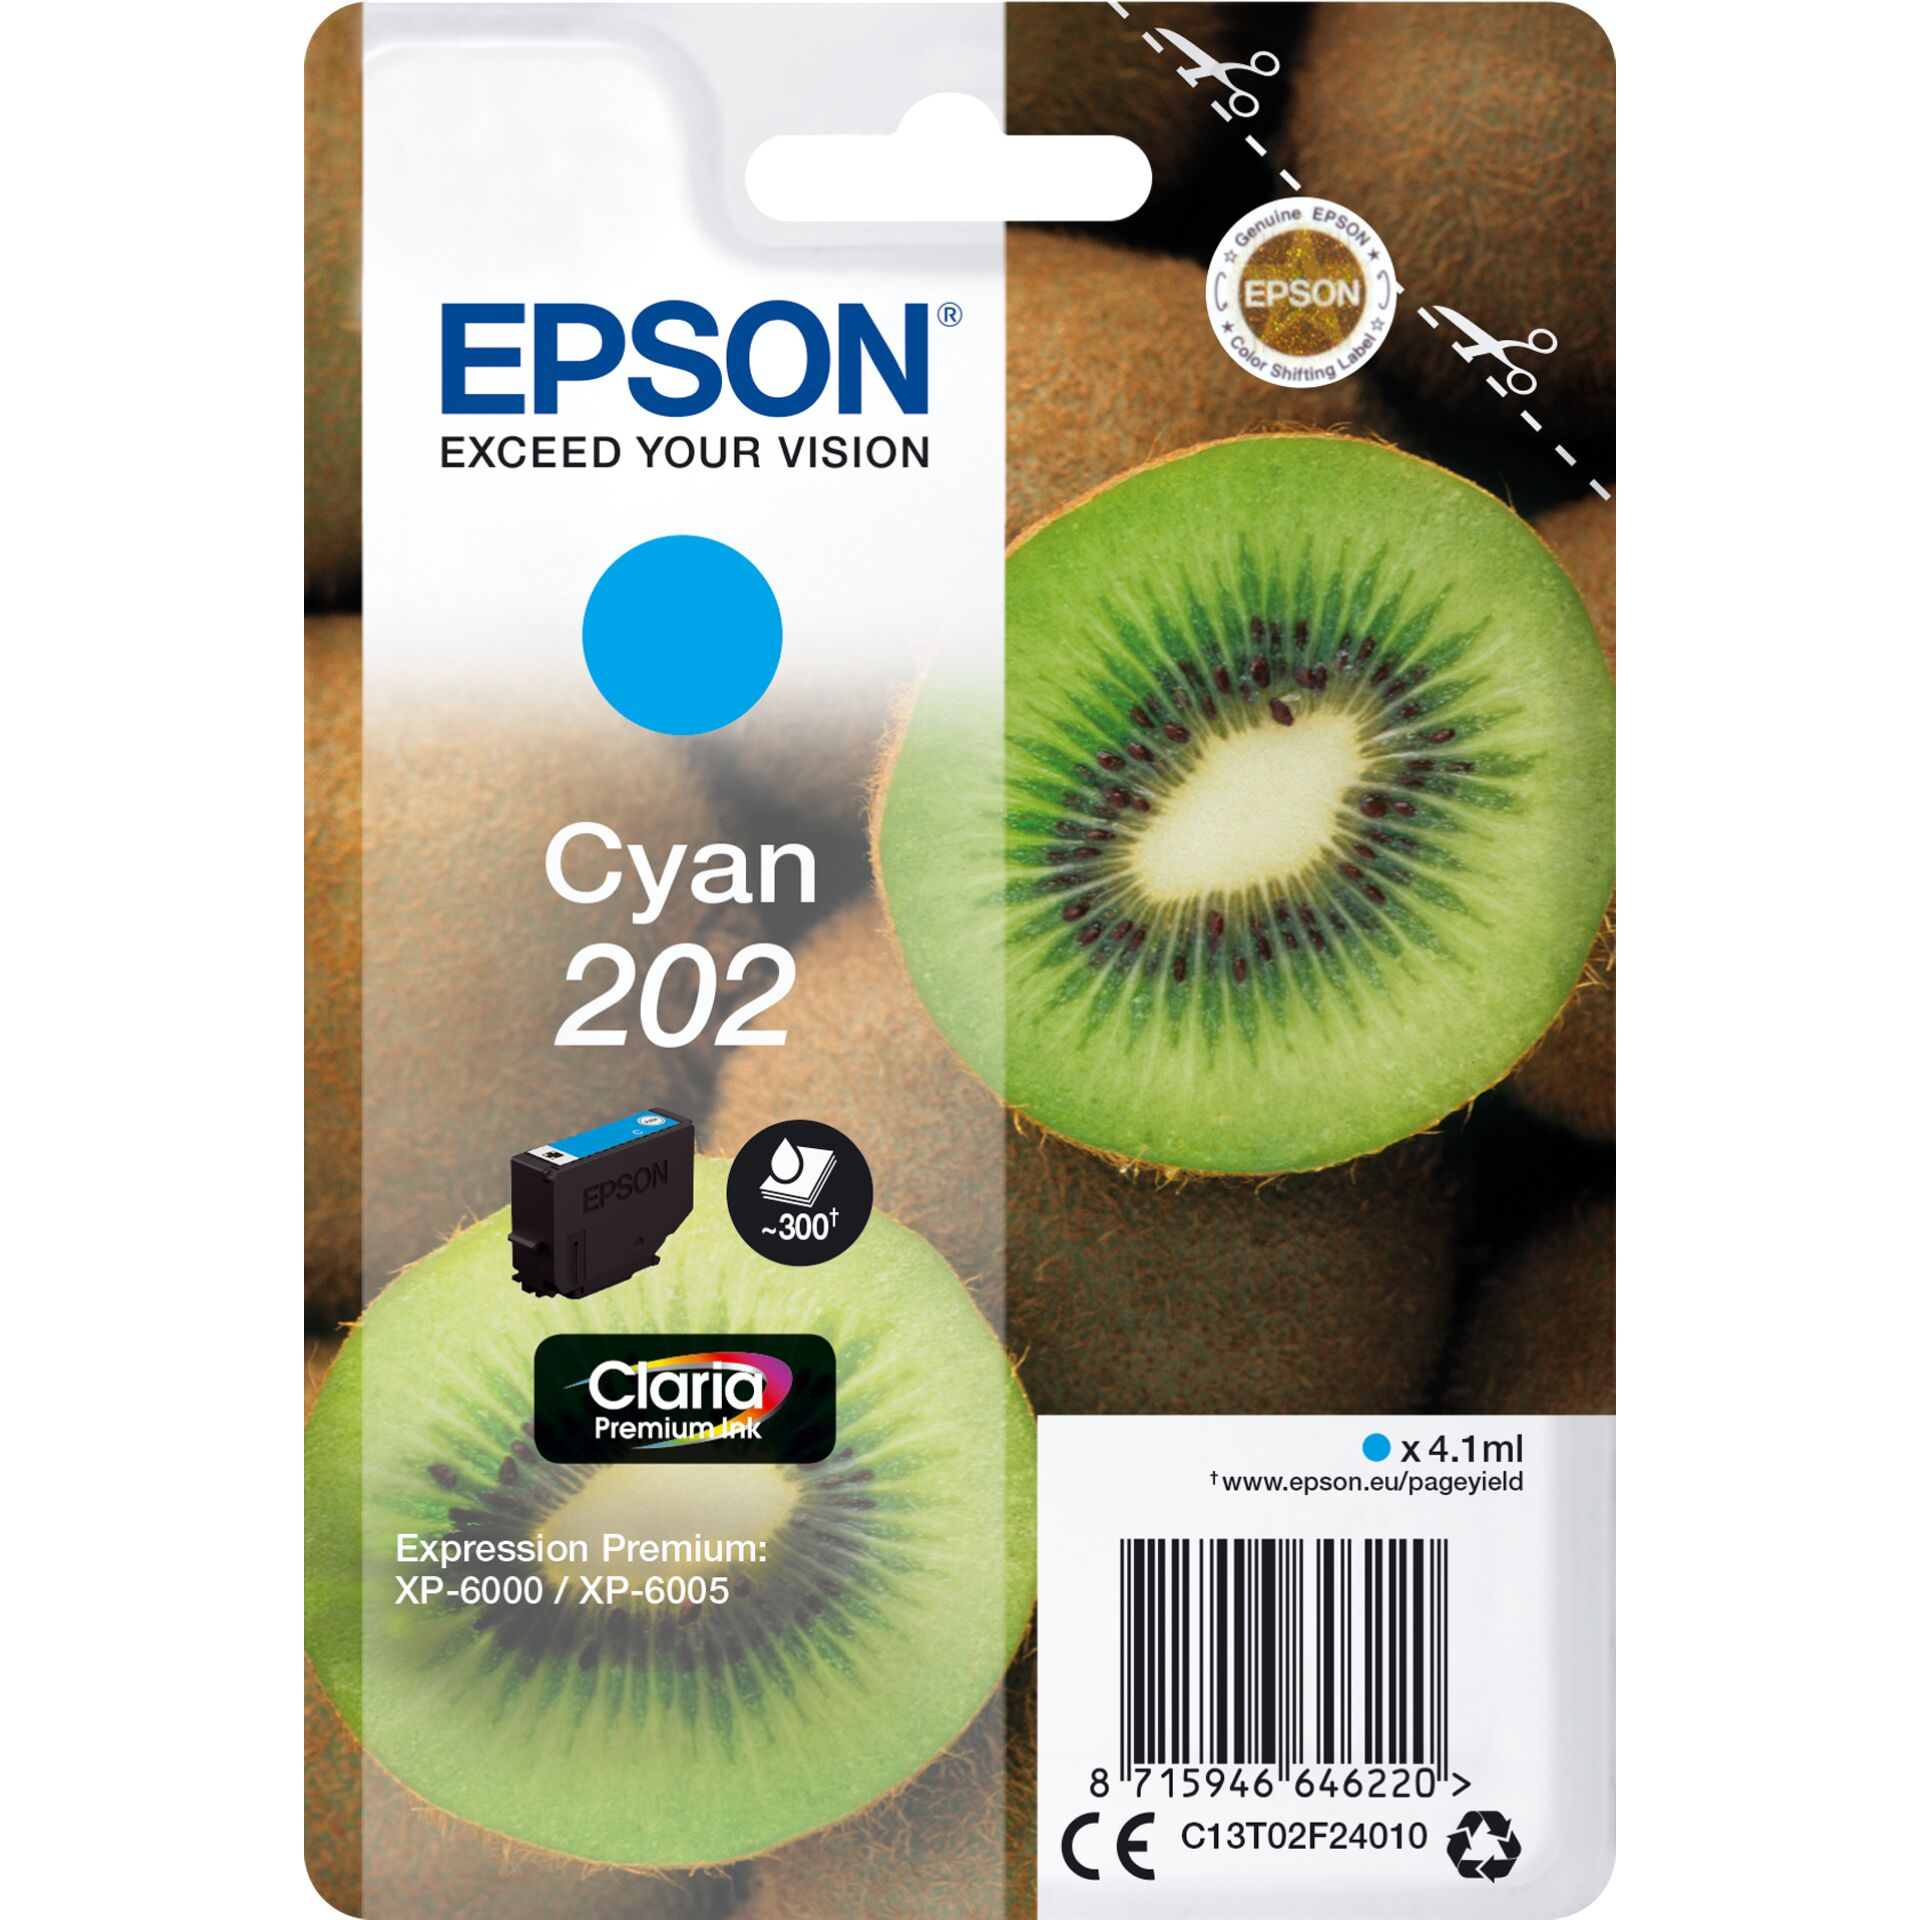 Epson Tinte 202 cyan 